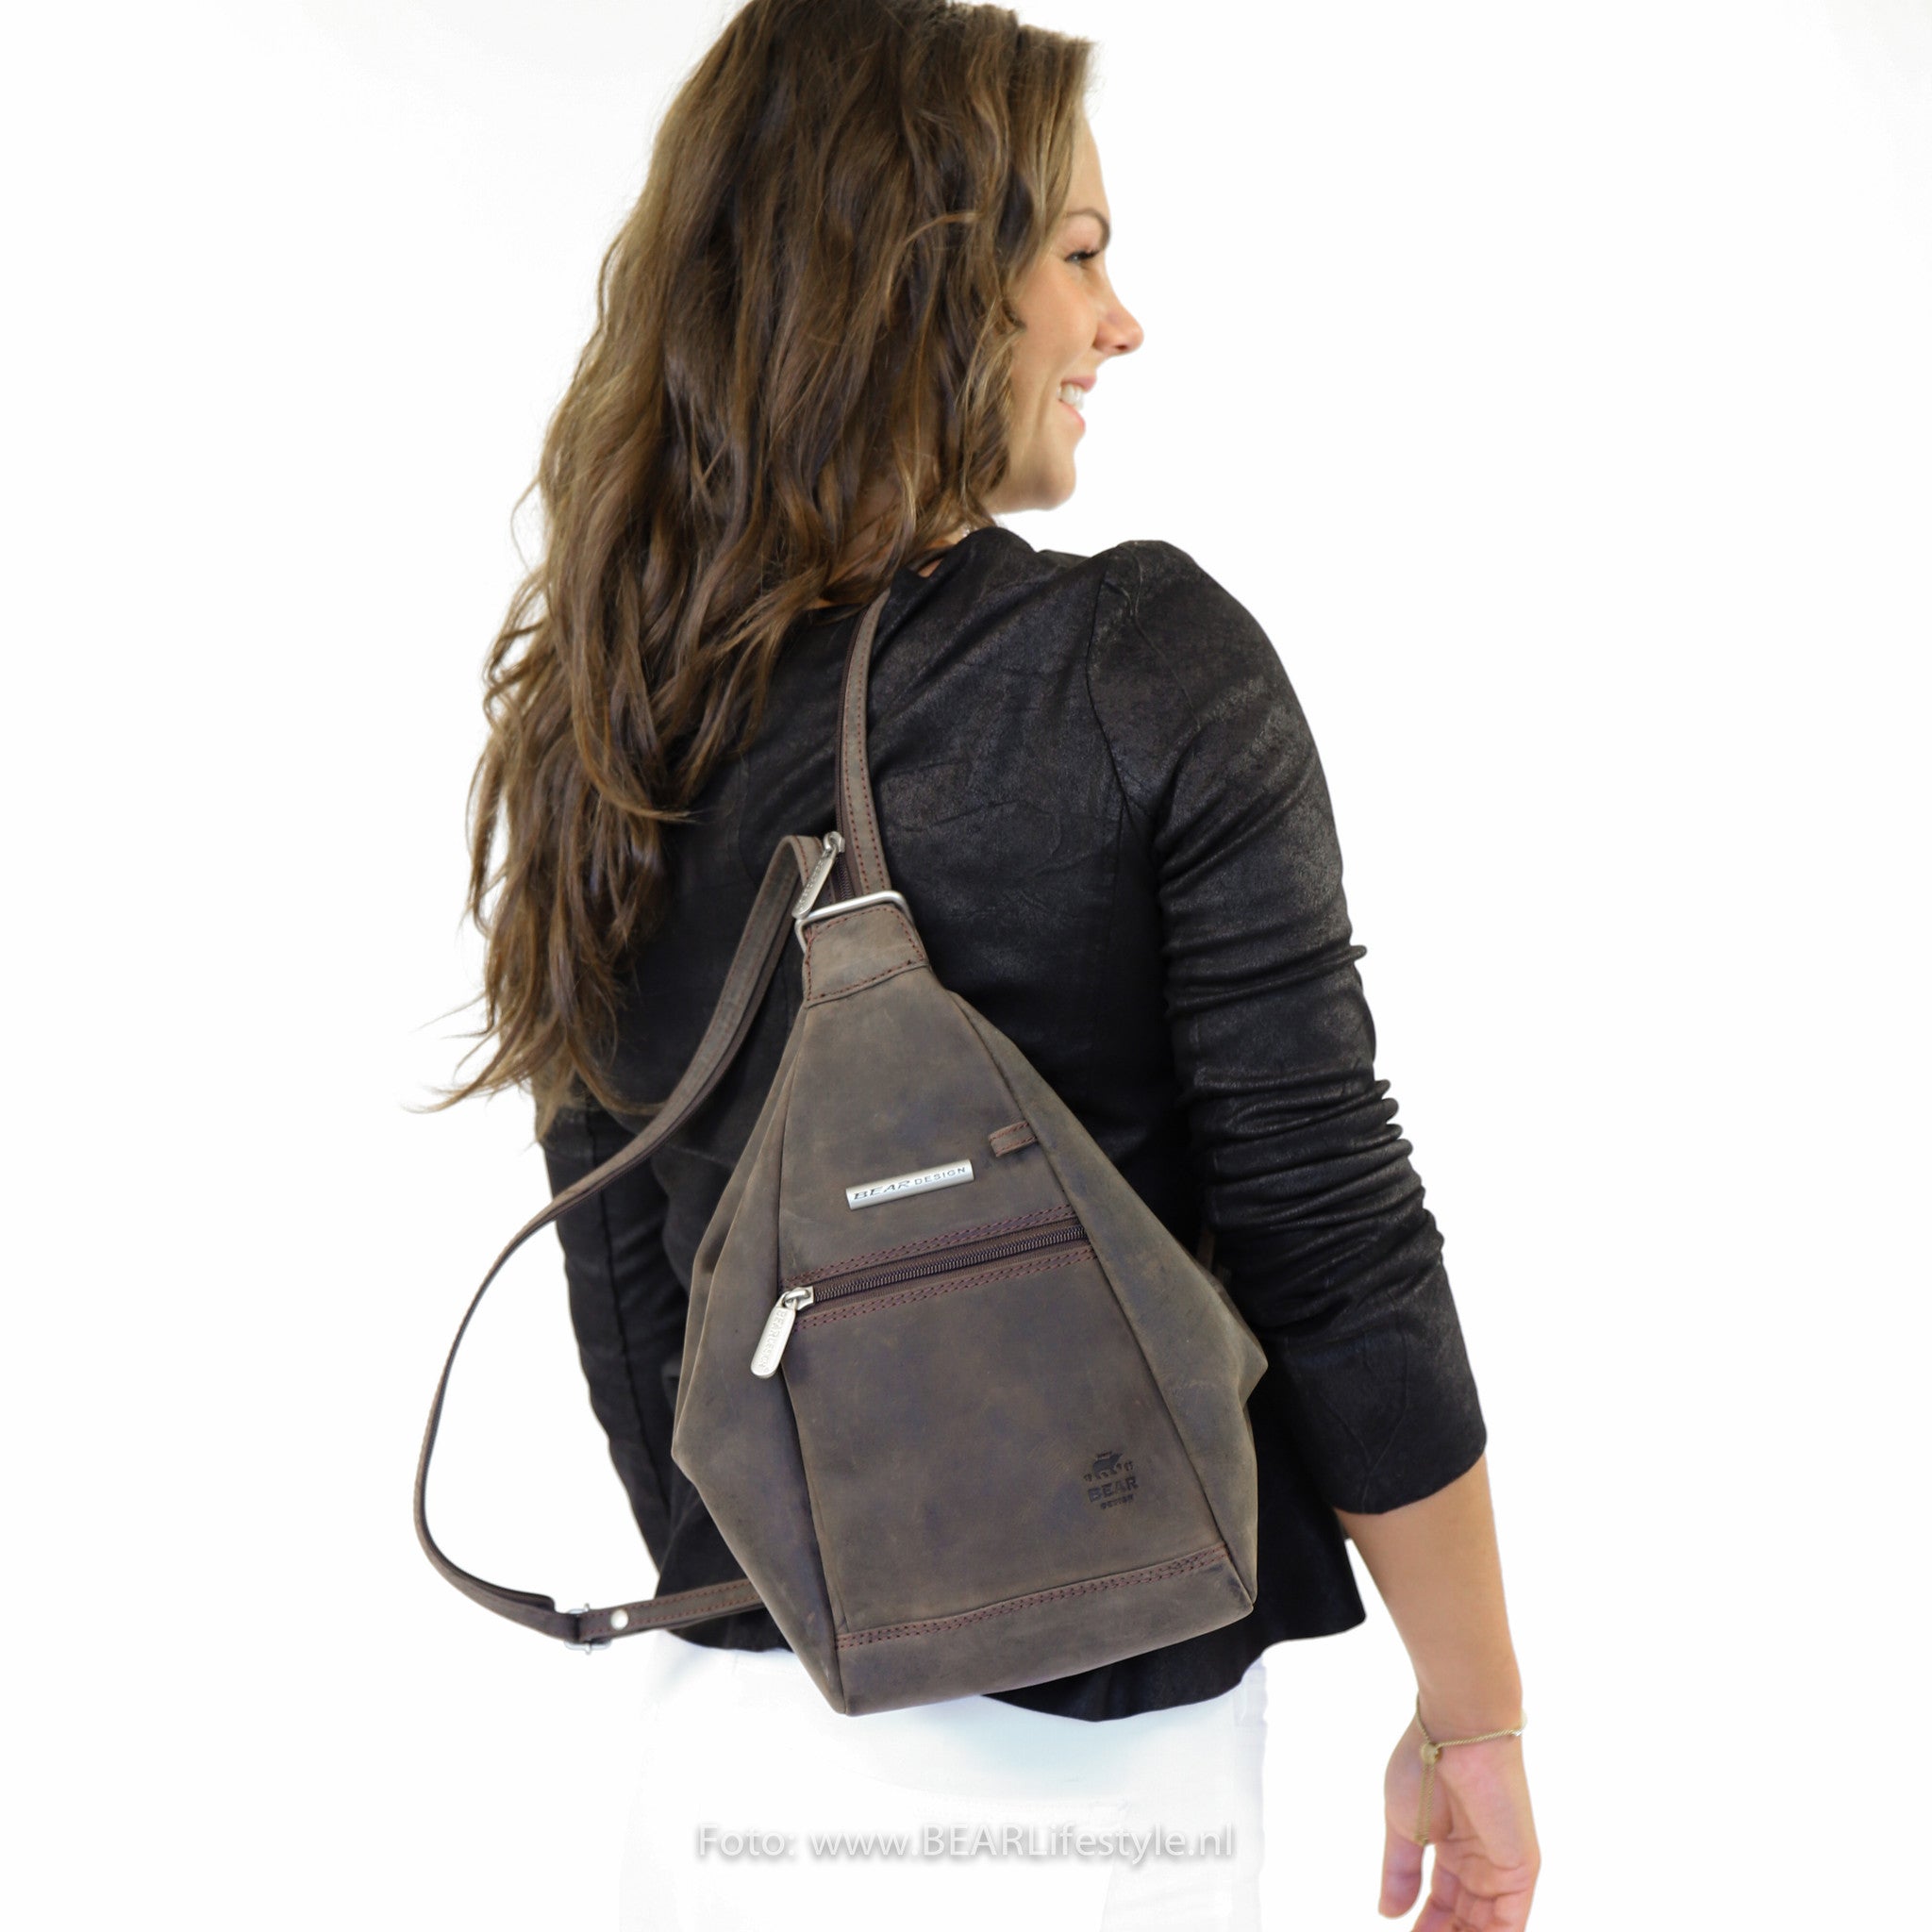 Backpack 'Hannie' brown